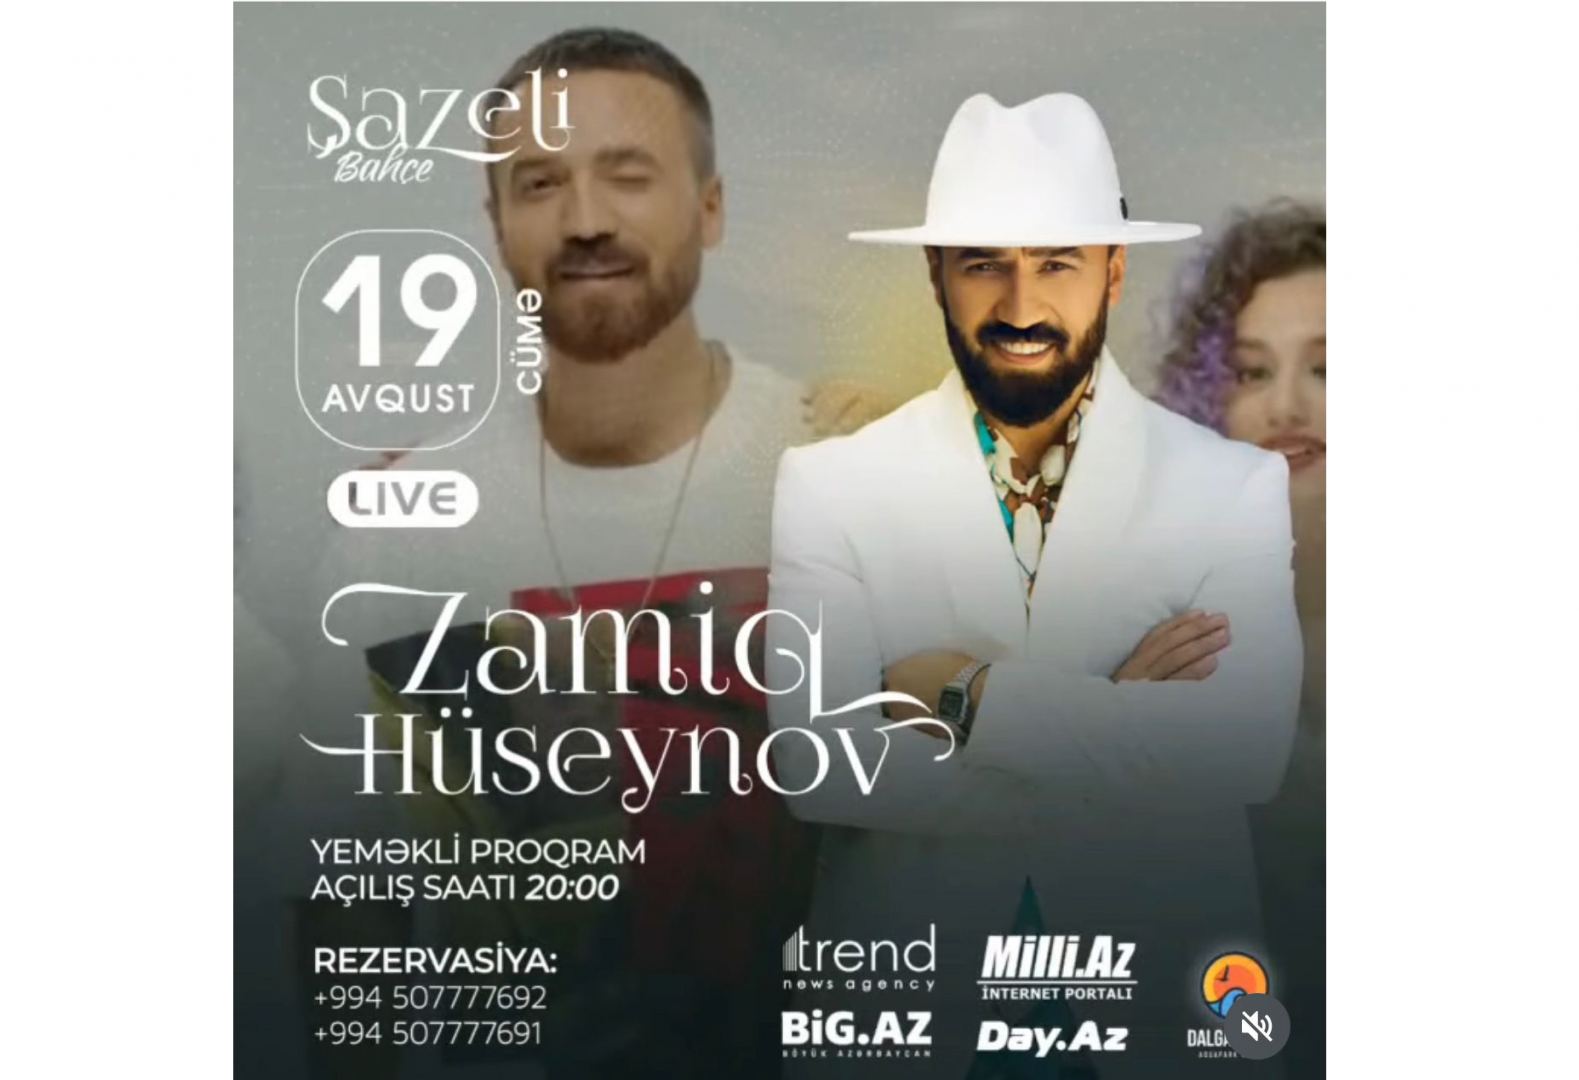 Zamiq Hüseynov "Şazeli Bahçe" festivalı çərçivəsində konsertlə çıxış edəcək (VİDEO)